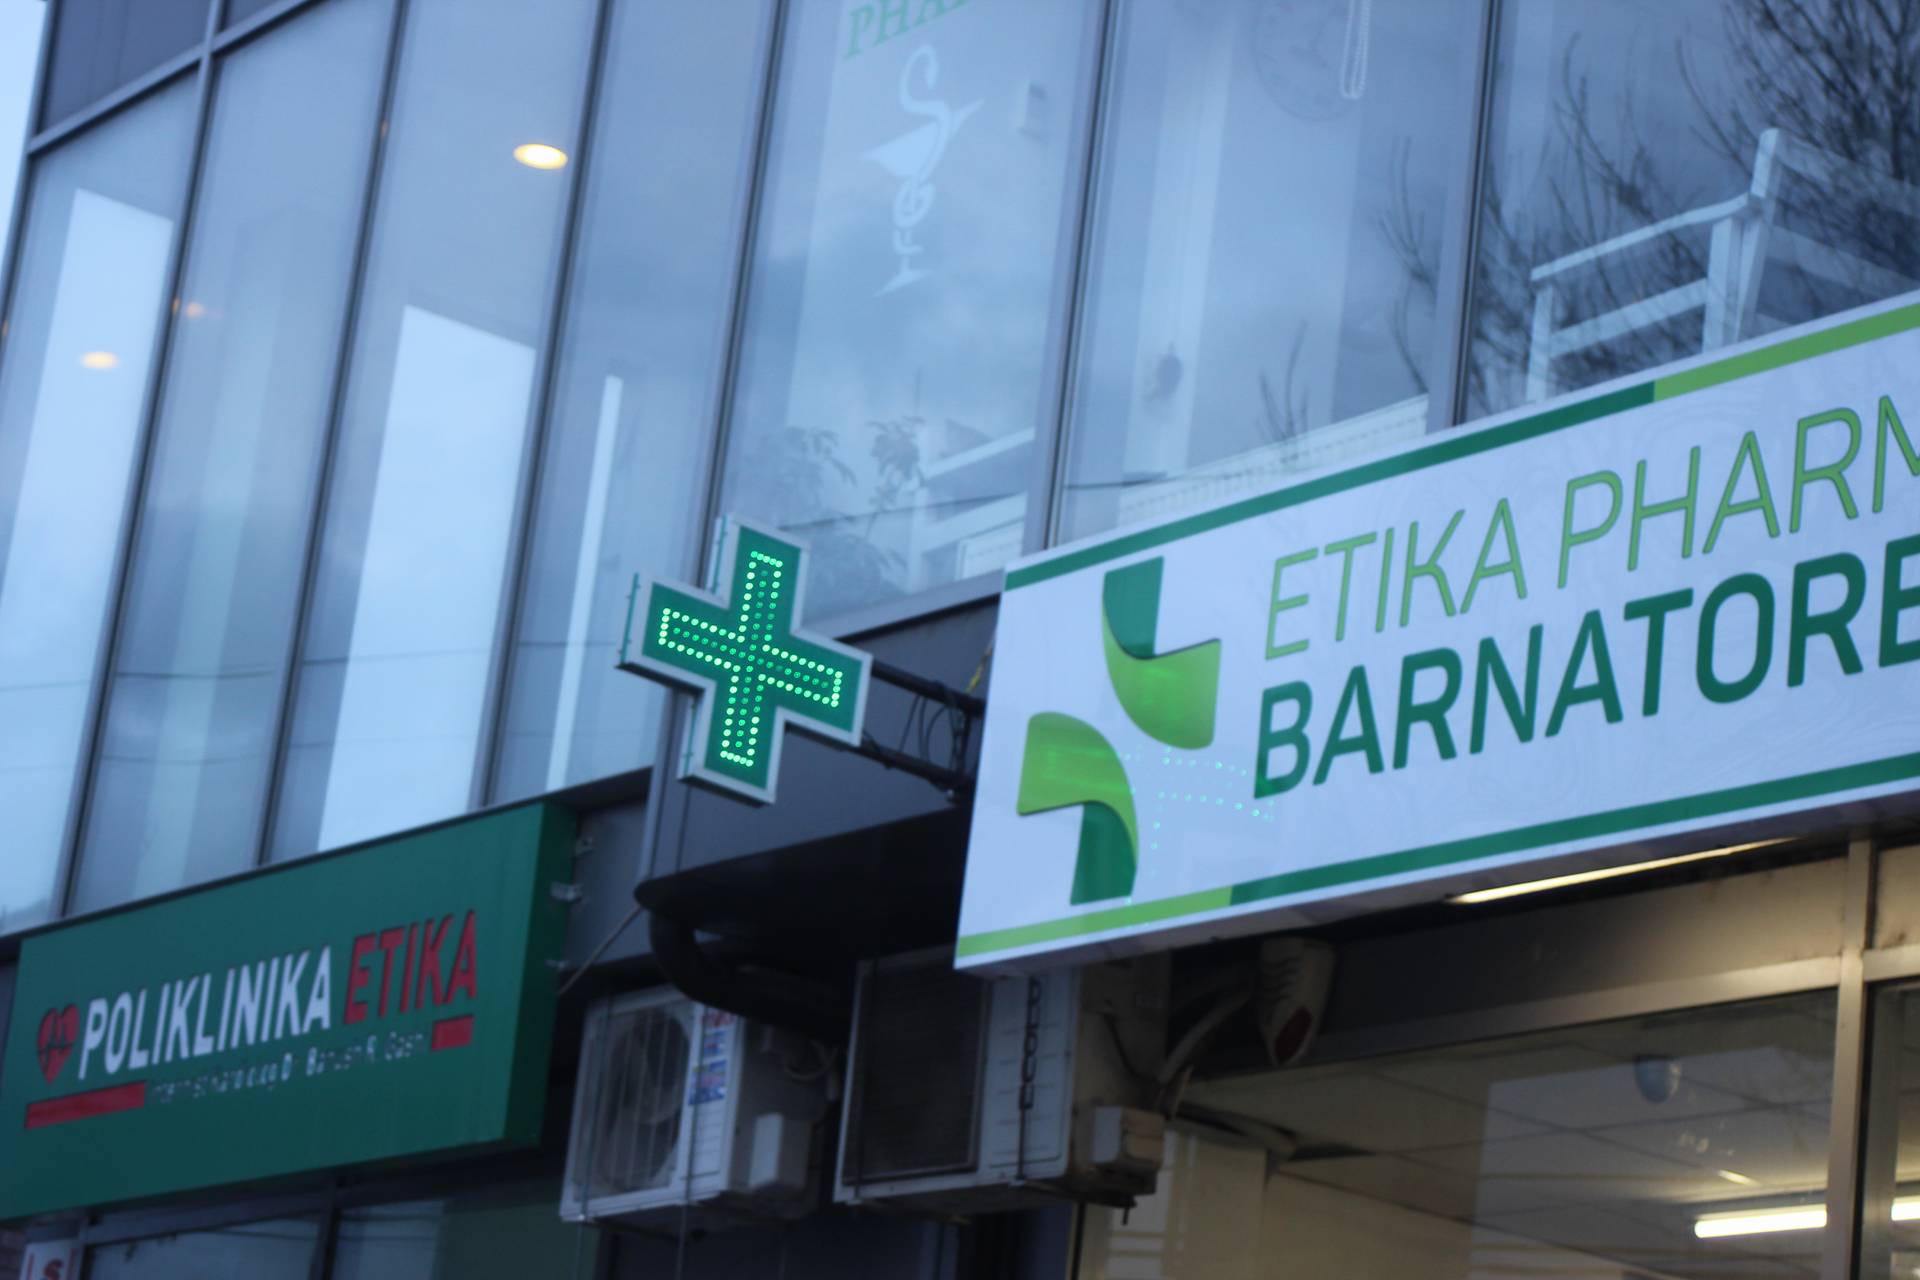 Hartohet orari i punës së Barnatoreve Farmaceutike të kujdestarisë në Komunën e Lipjanit